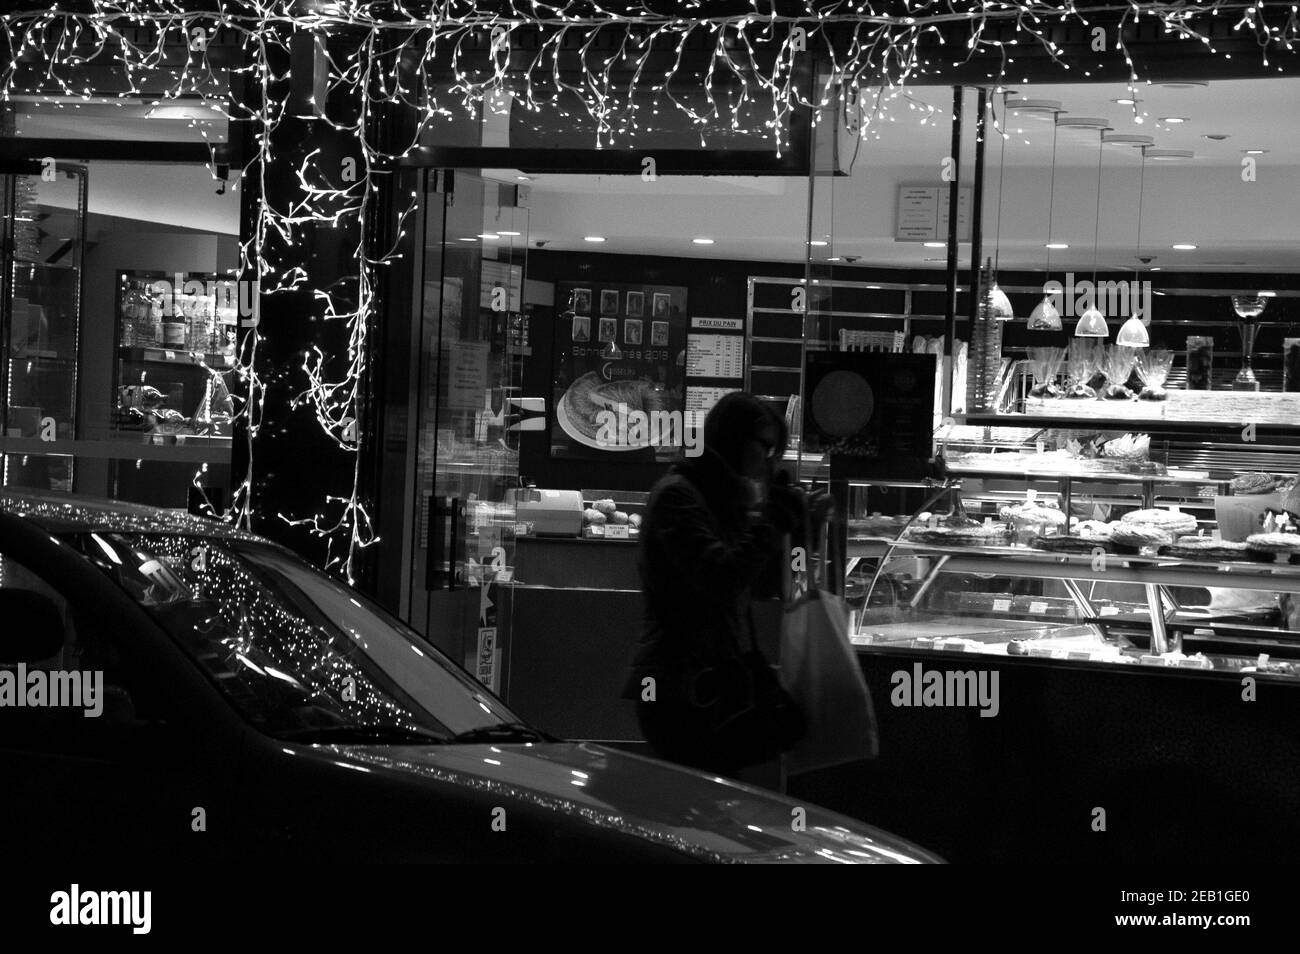 Femme sortant de la boulangerie parisienne décorée de guirlande lumineuse pour les vacances d'hiver. Paris, France. Photo historique noir blanc Banque D'Images